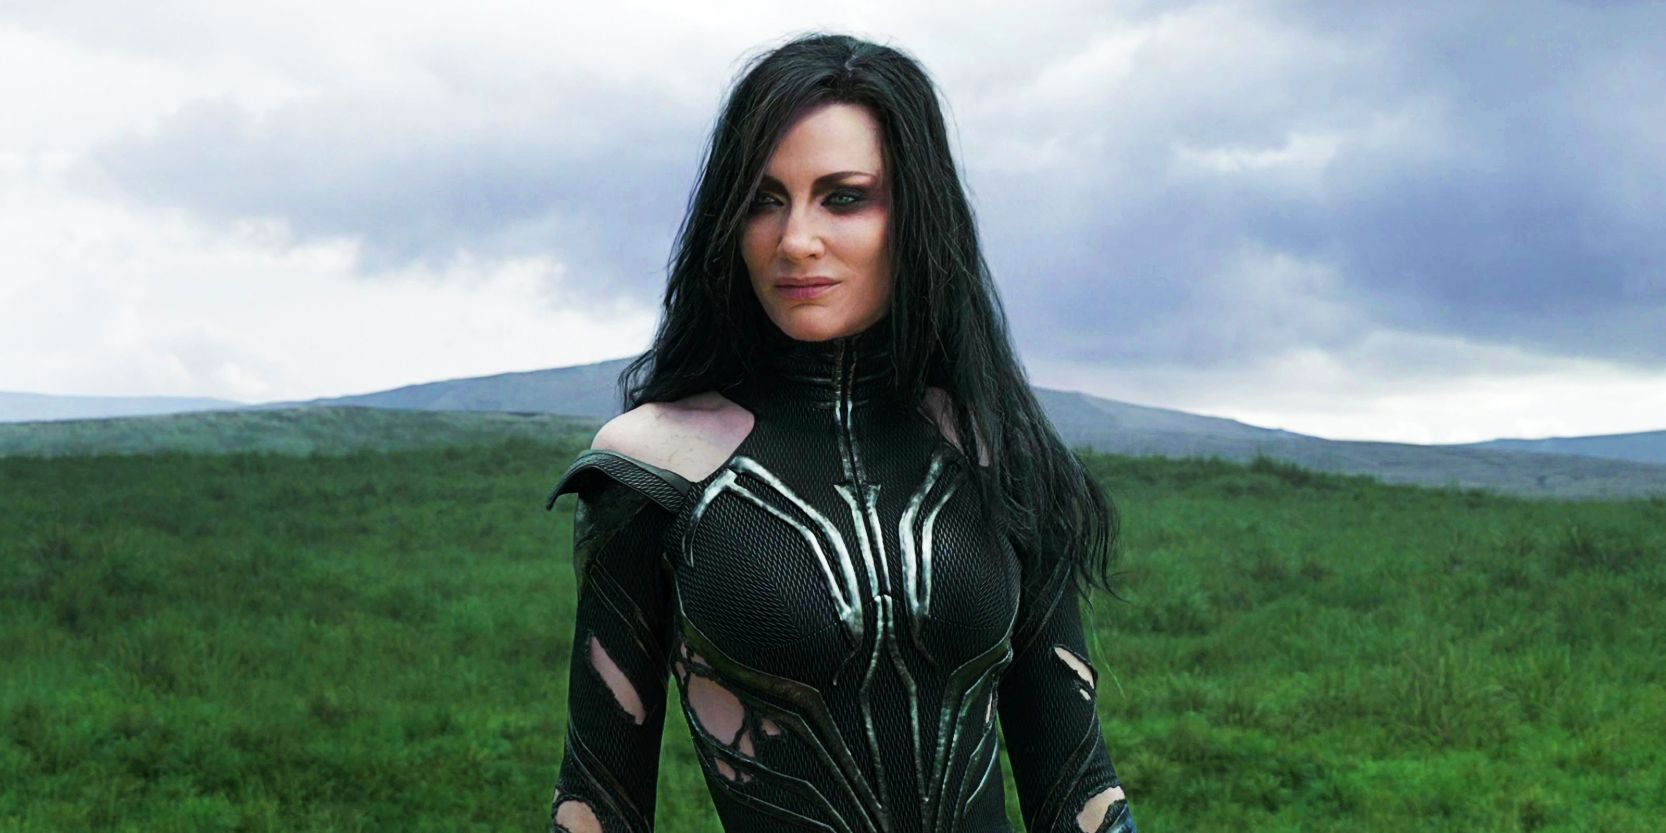 Hela standing in an open field in Thor: Ragnarok.